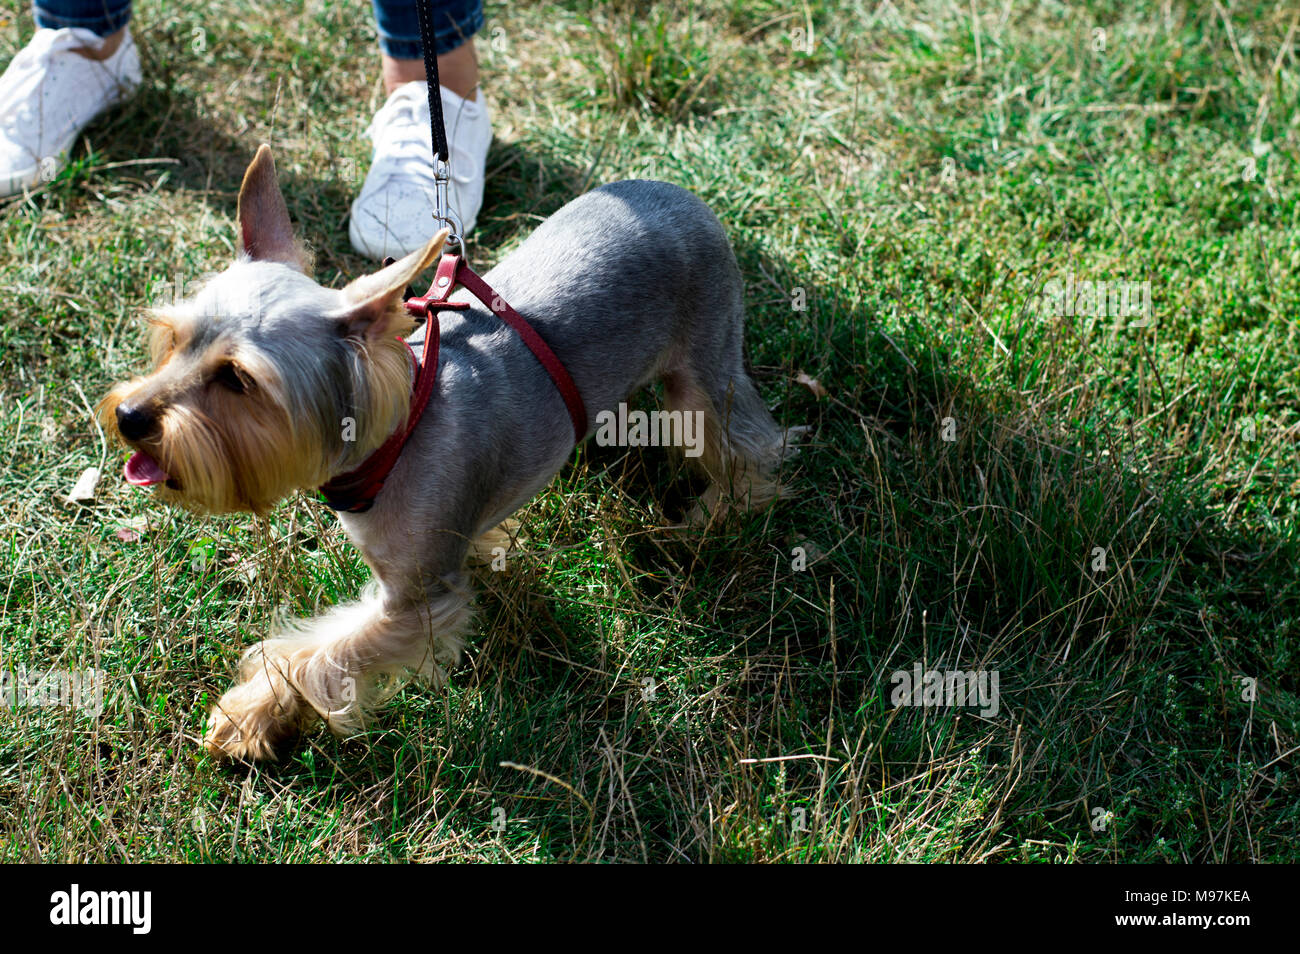 Belle Yorkshire Terrier marche sur l'herbe, le thème de l'chien domestique Banque D'Images